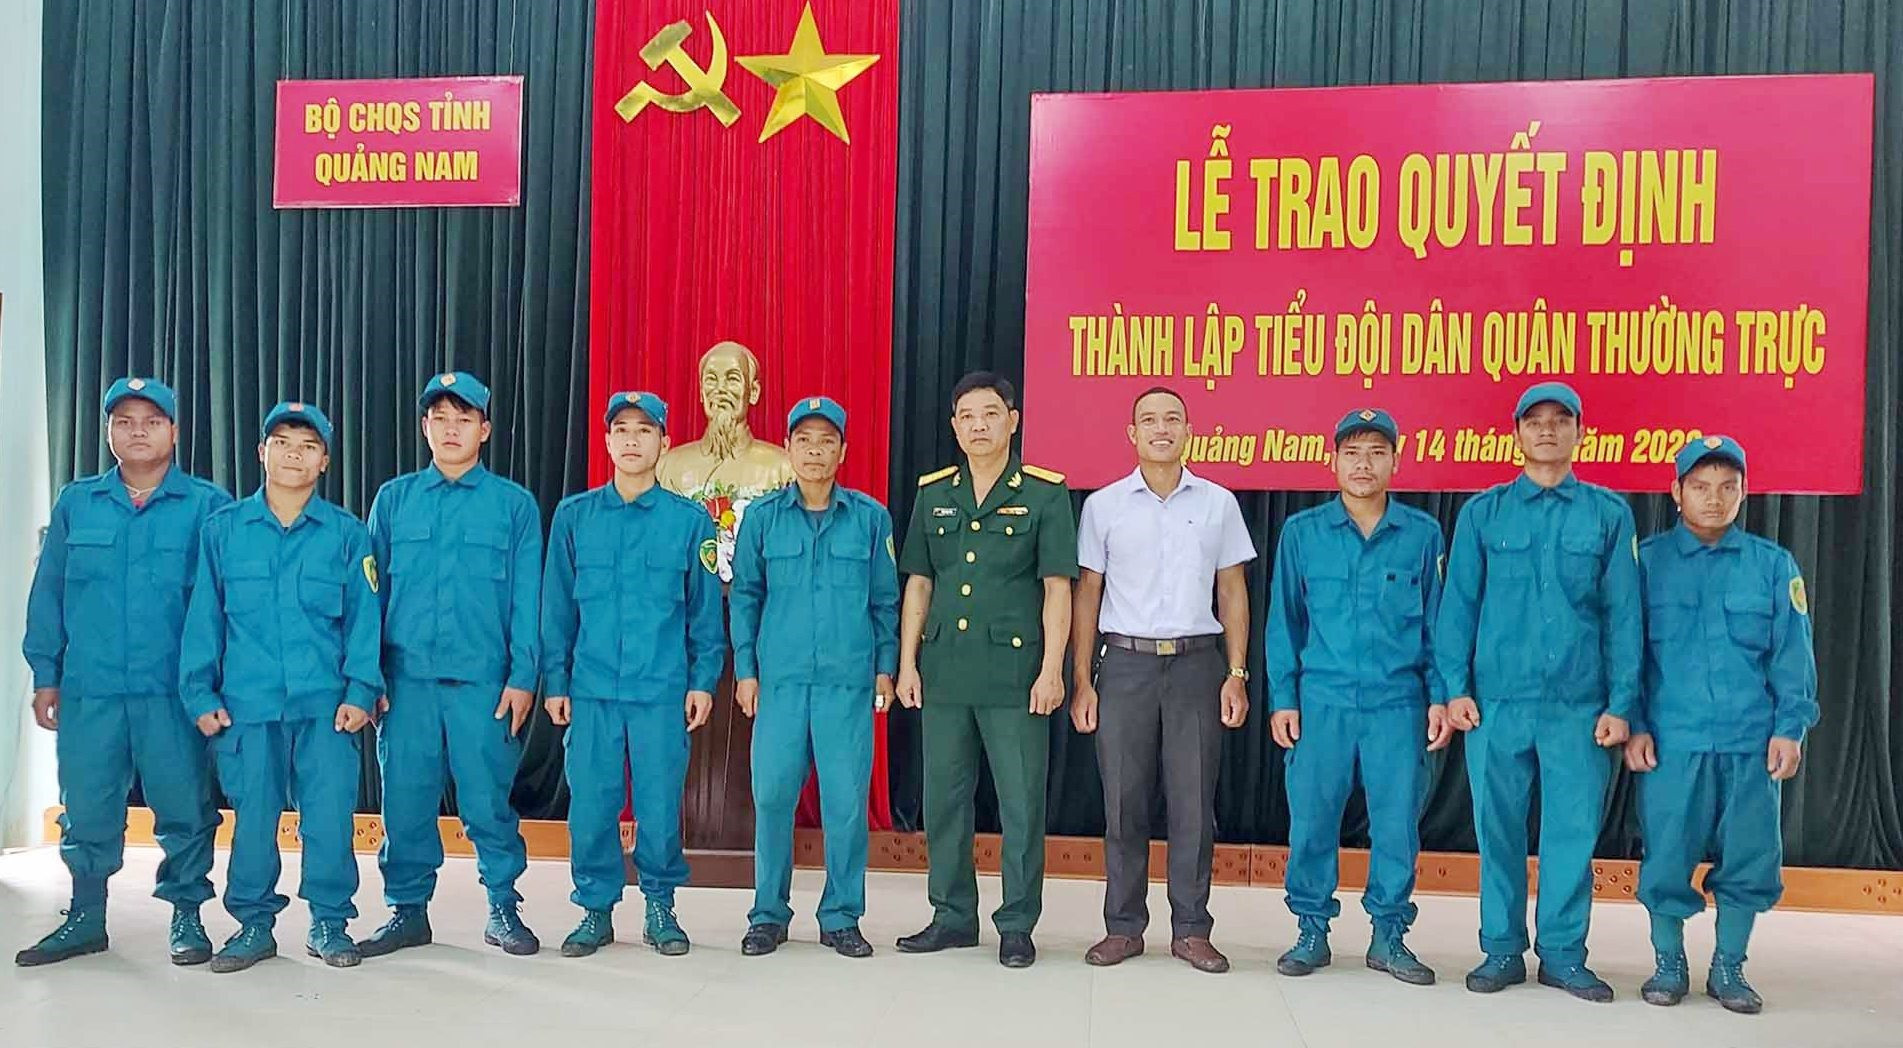 Tiểu đội dân quân thường trực xã Trà Linh.